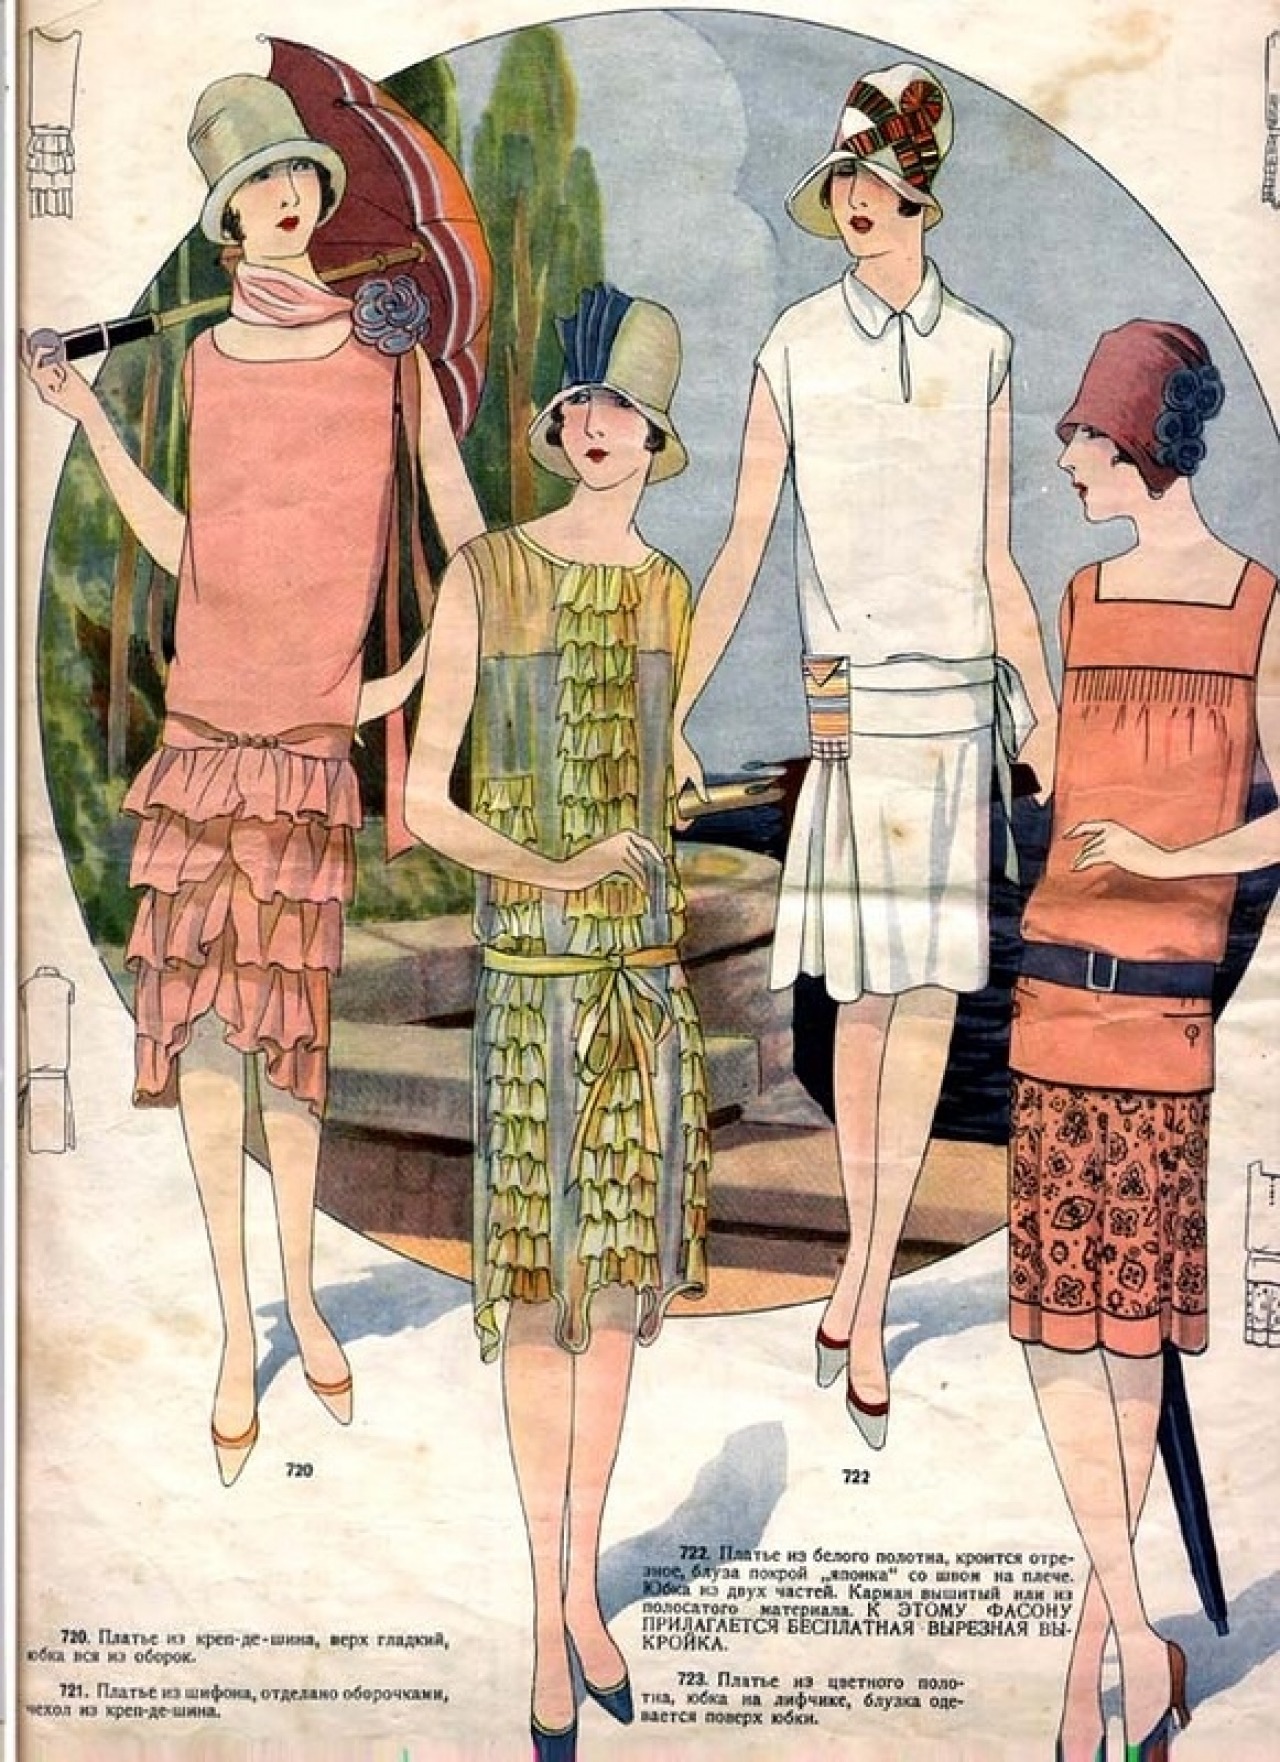 20th Century Fashion History: 1920 - 1930 - The Fashion Folks